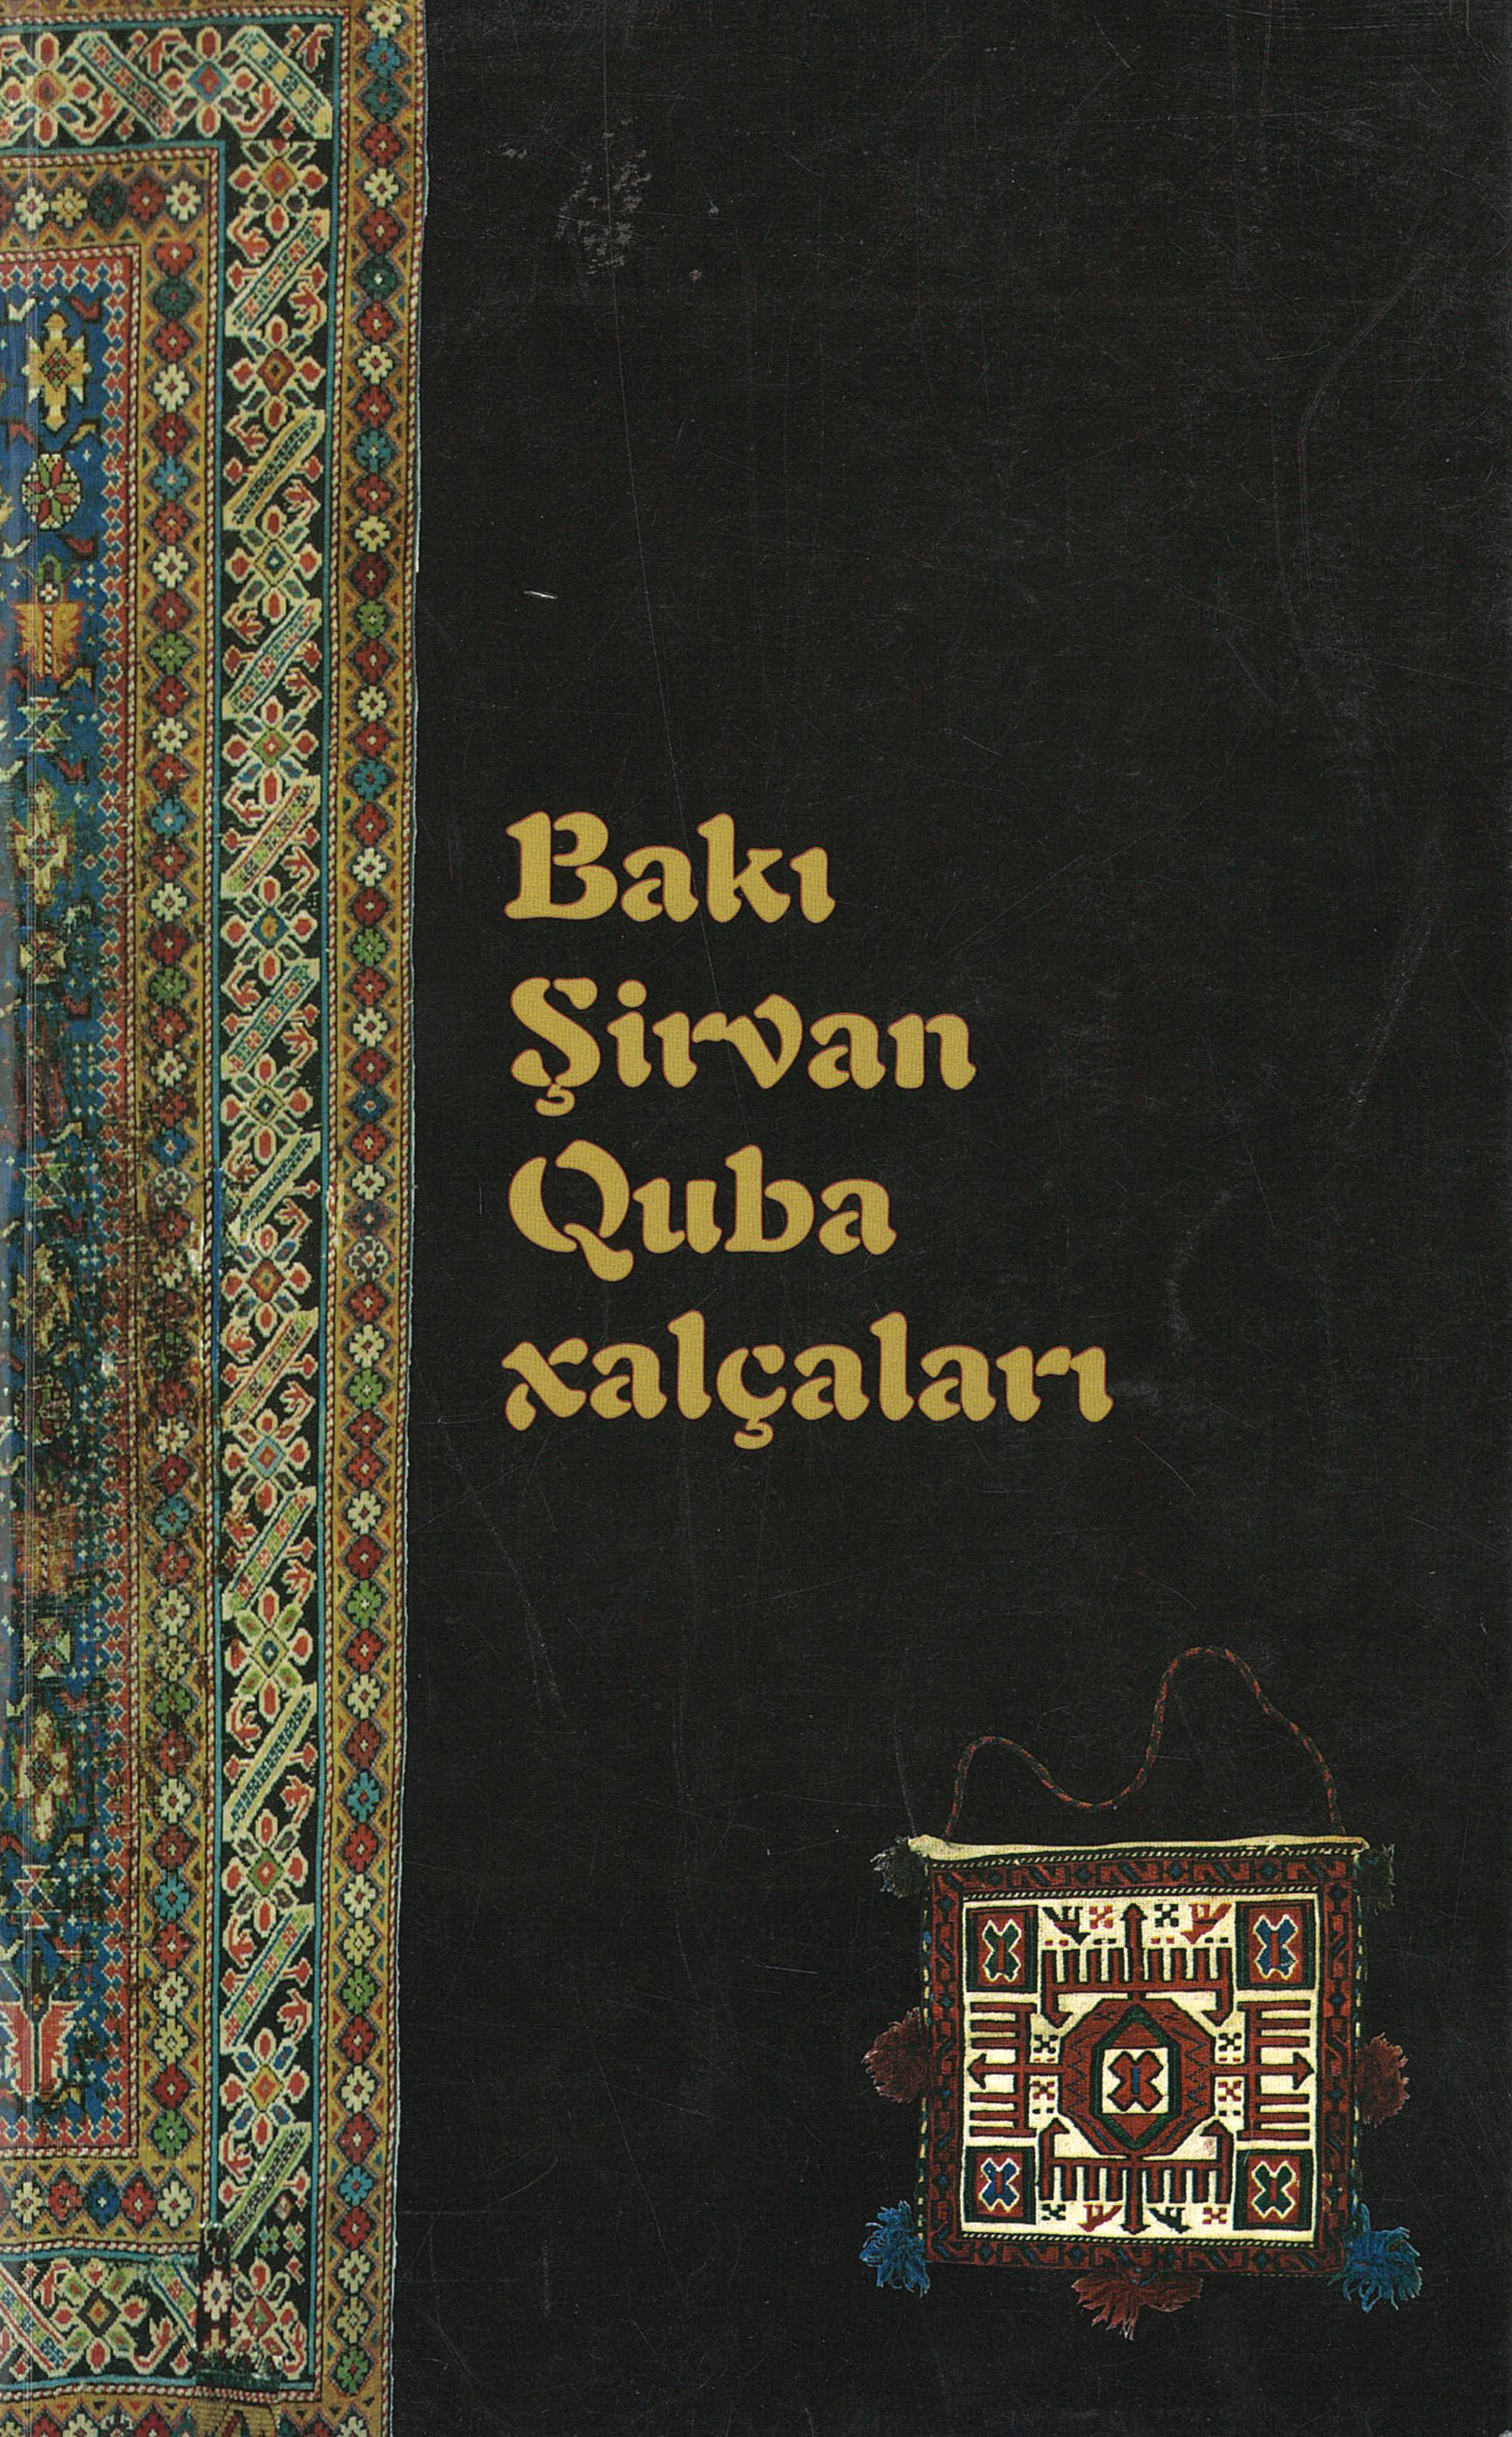  Baku, Shirvan, Guba carpets